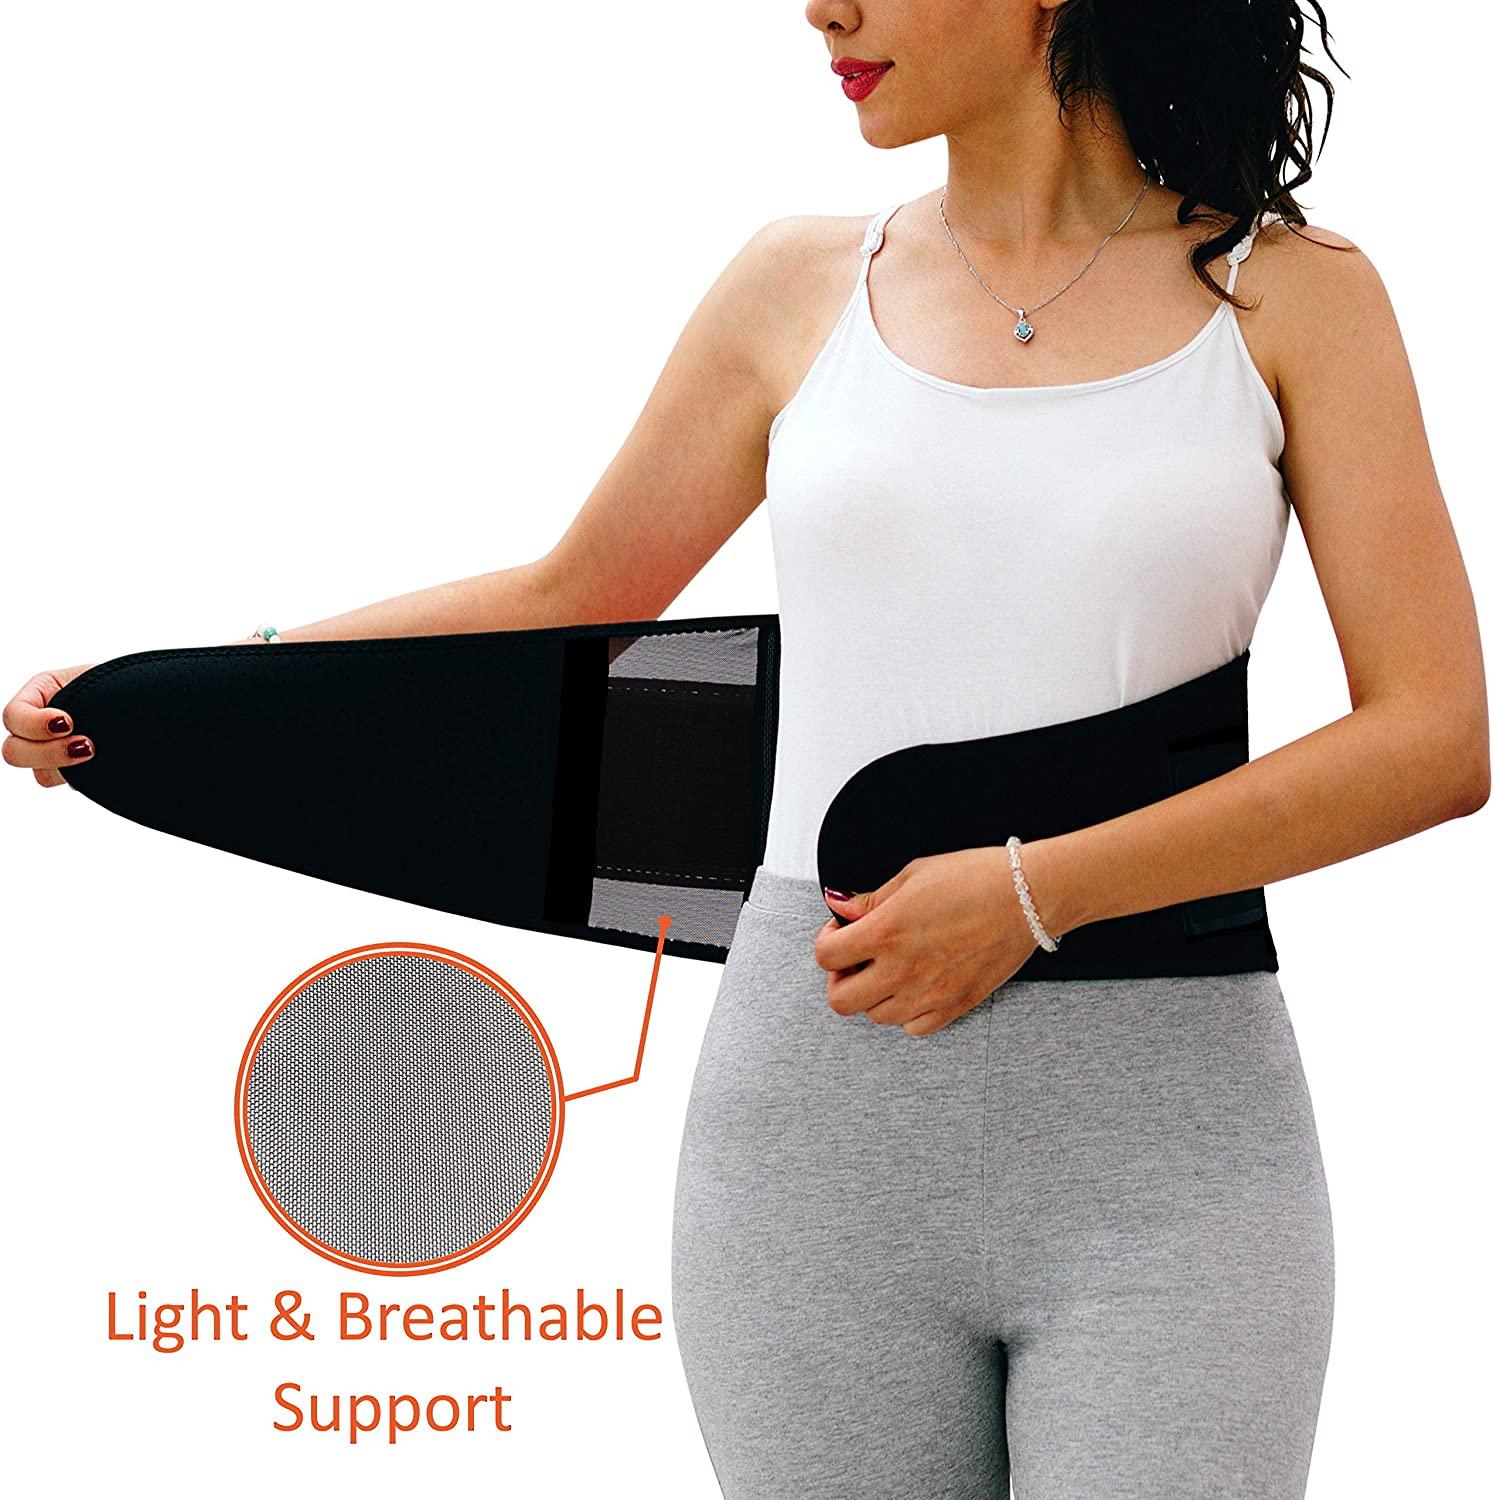  Breathable & Light Lower Back Brace Waist Trainer